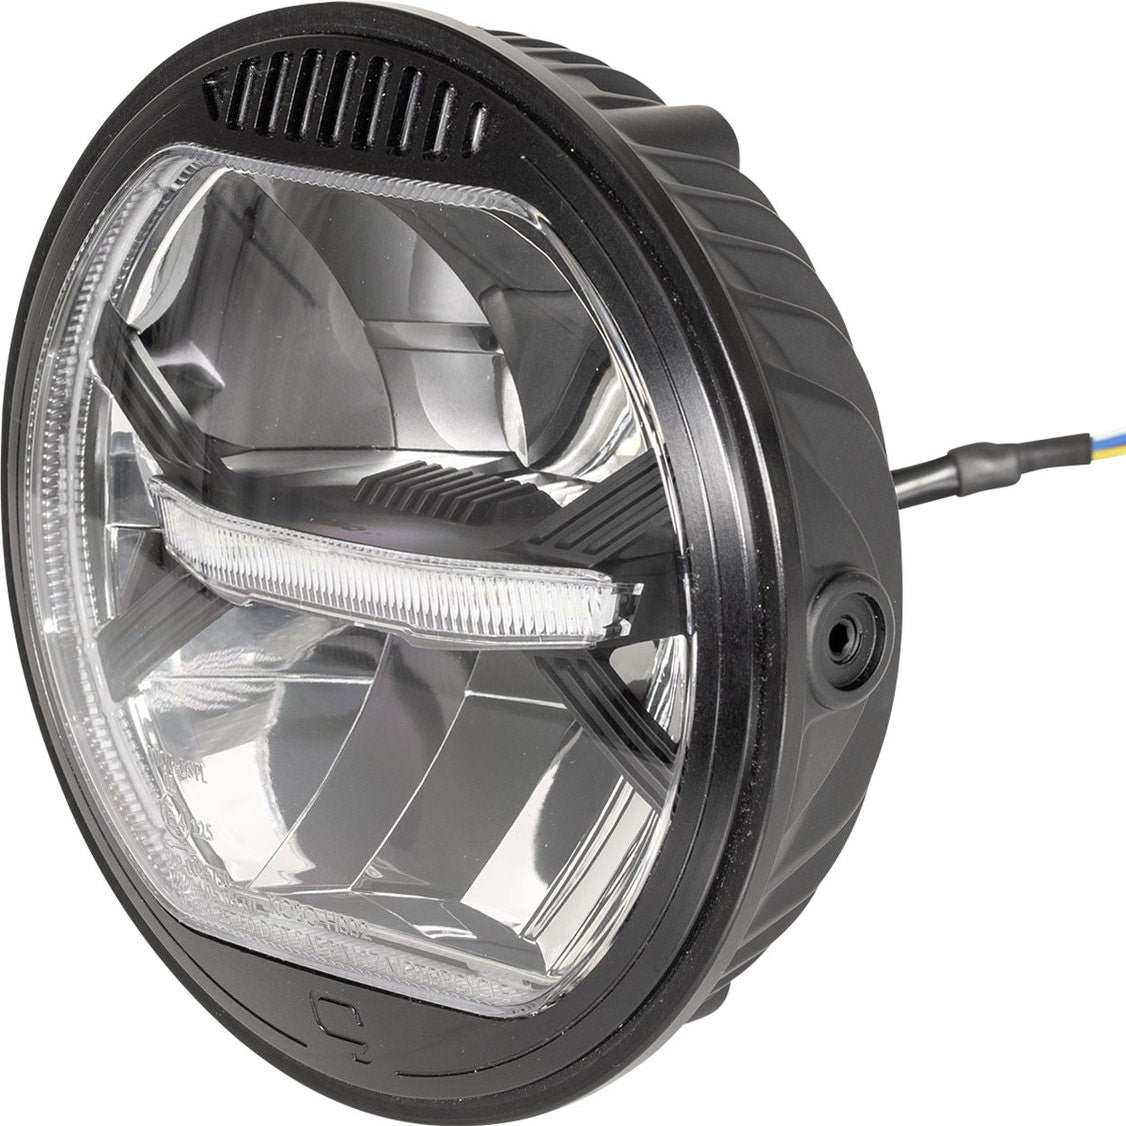 Koso Thunderbolt LED Headlight